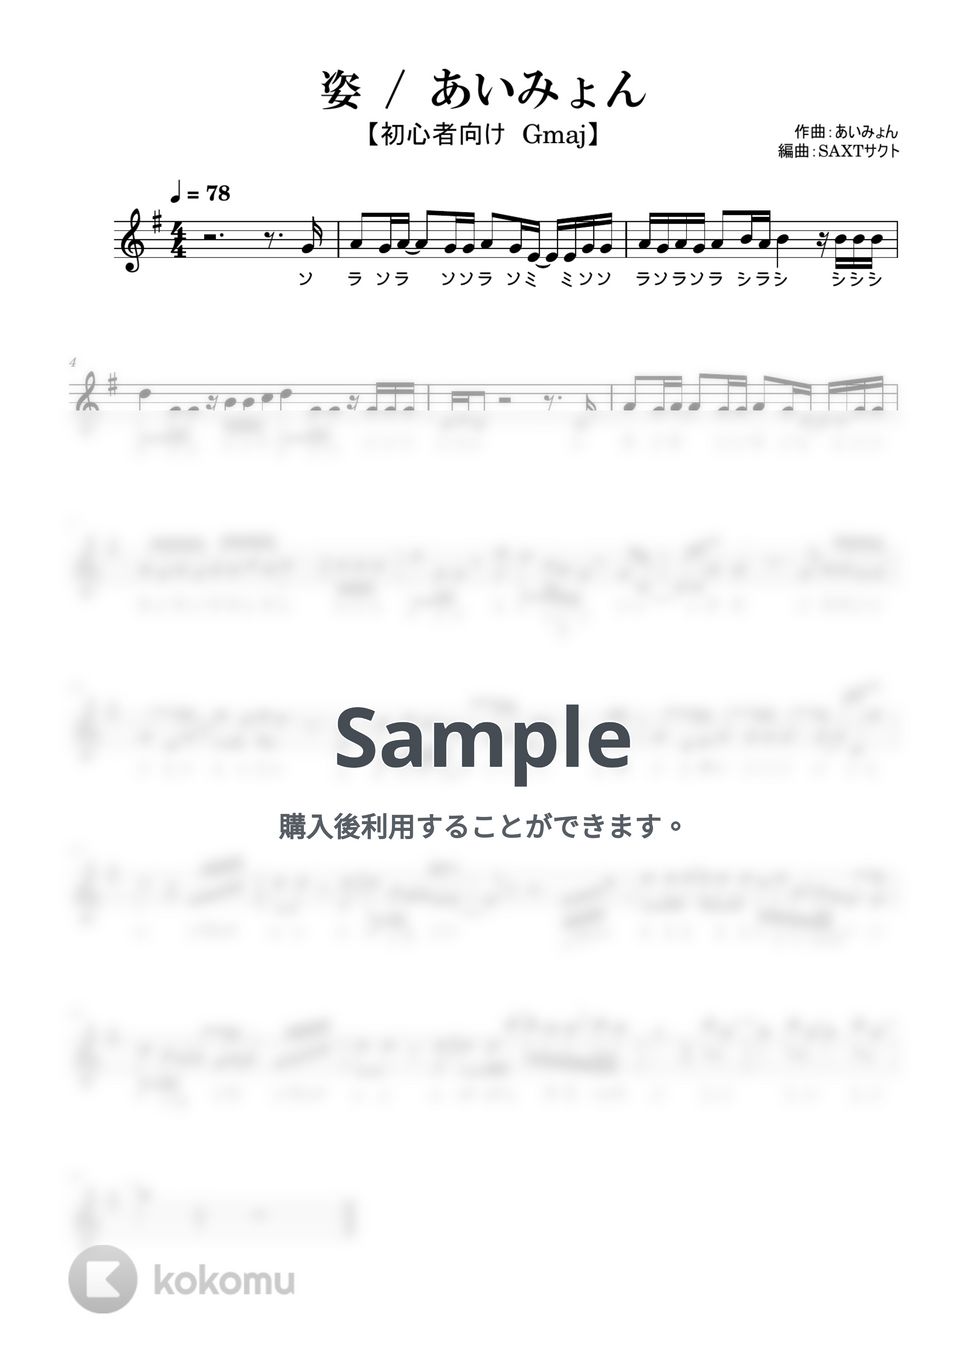 あいみょん - 姿 (めちゃラク譜) by SAXT